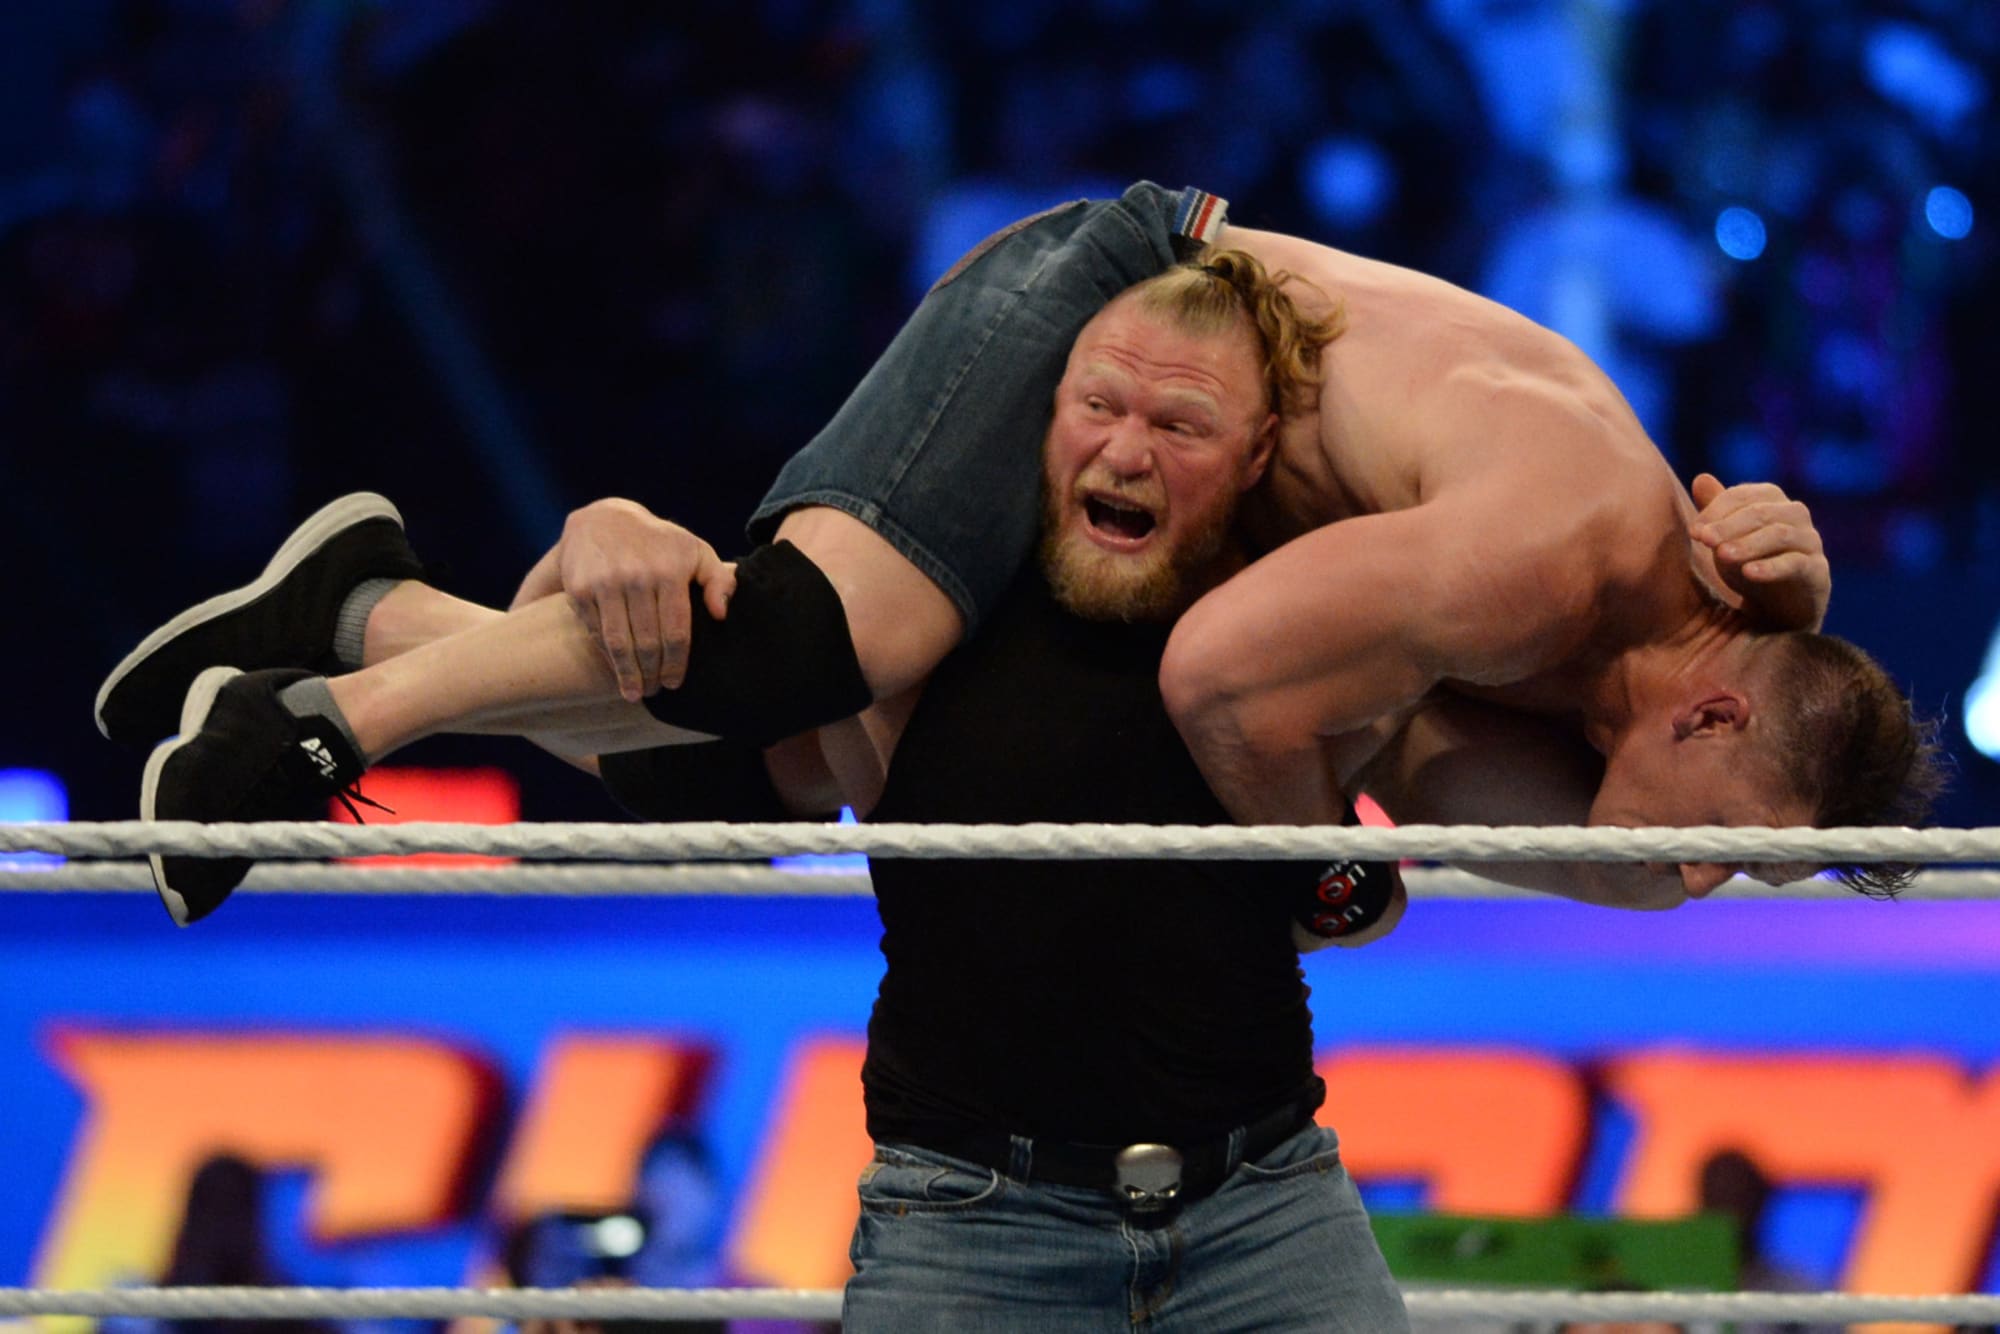 Brock Lesnar ragdolled John Cena after SummerSlam was over (Video)